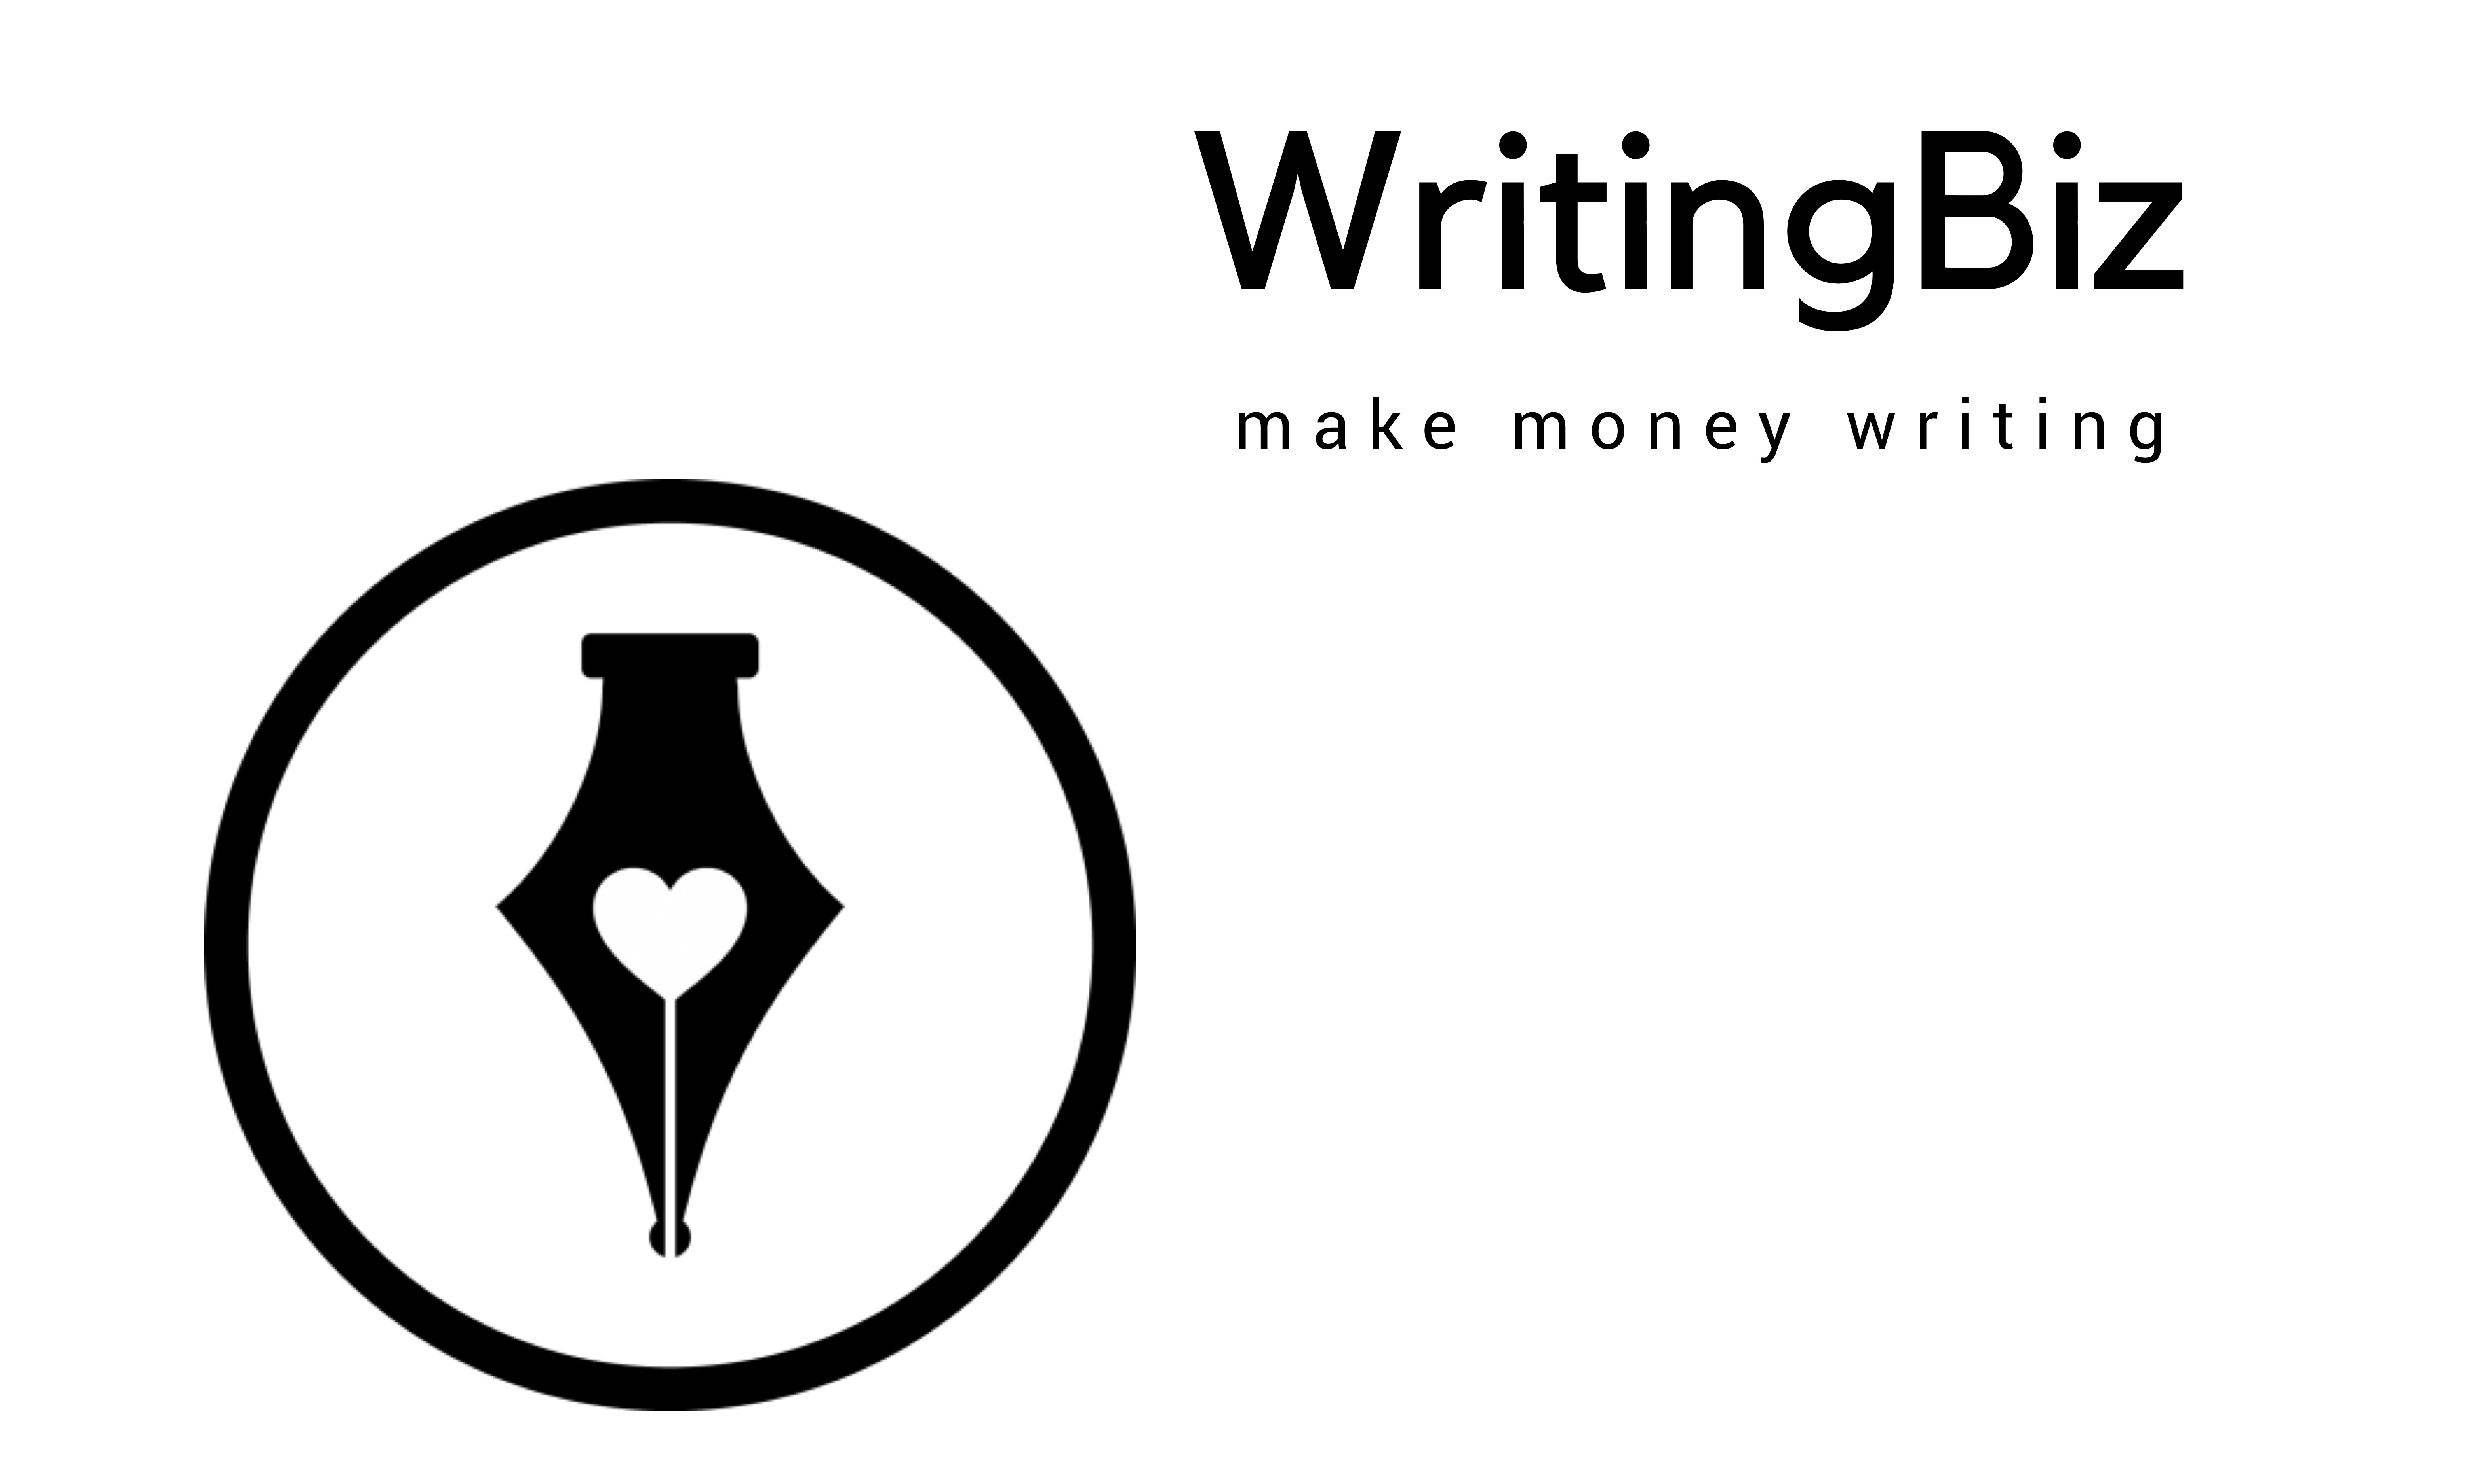 WritingBiz - Make Money Writing